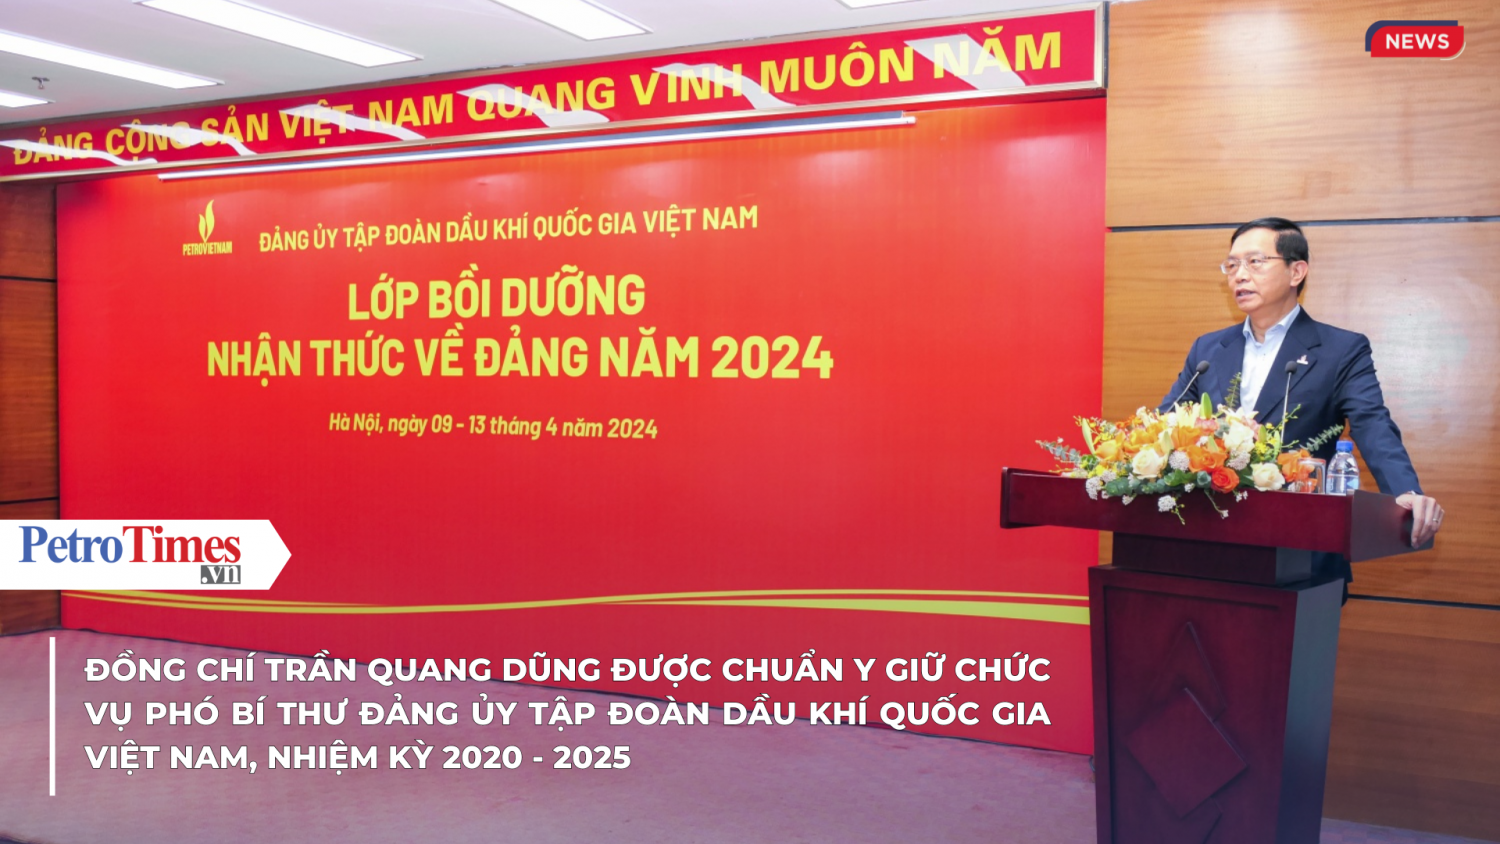 [VIDEO] Đồng chí Trần Quang Dũng được chuẩn y giữ chức vụ Phó Bí thư Đảng ủy Tập đoàn Dầu khí Quốc gia Việt Nam, nhiệm kỳ 2020 - 2025